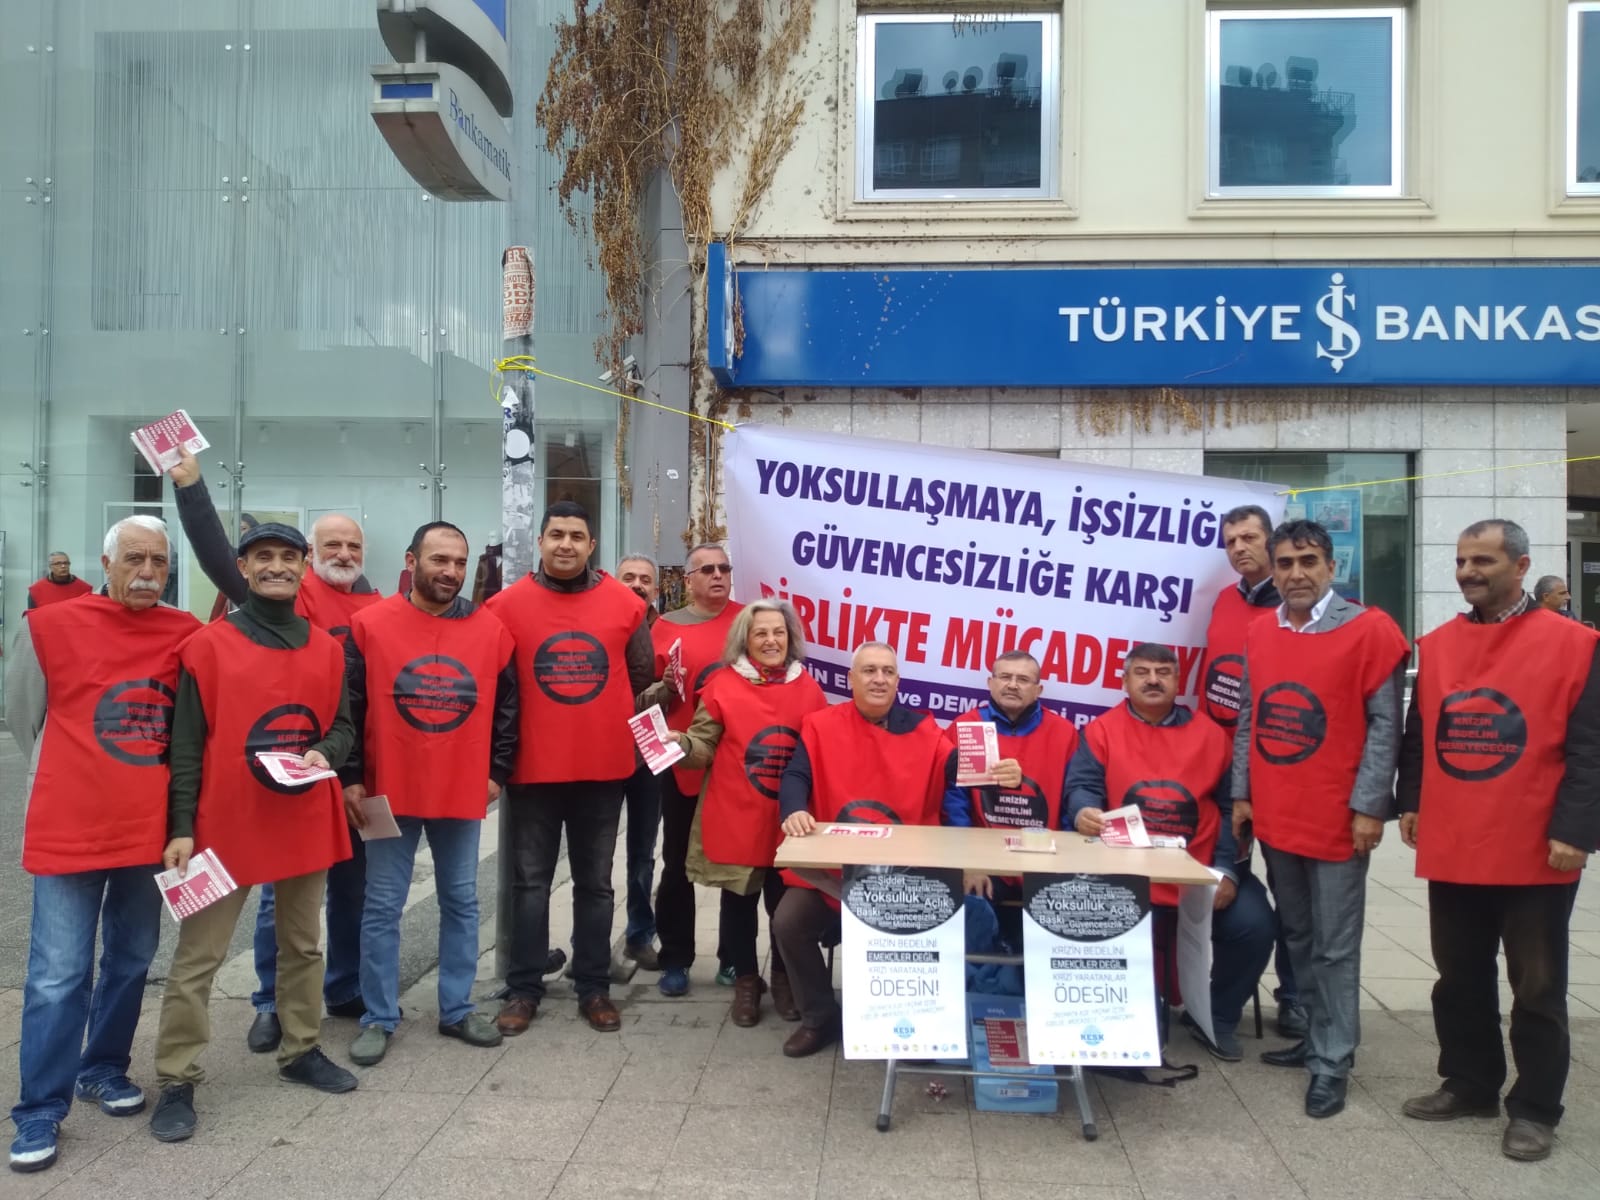 Mersin Emek ve Demokrasi Platformu 15 Aralık Adana Mitingine Çağrı Yaptı